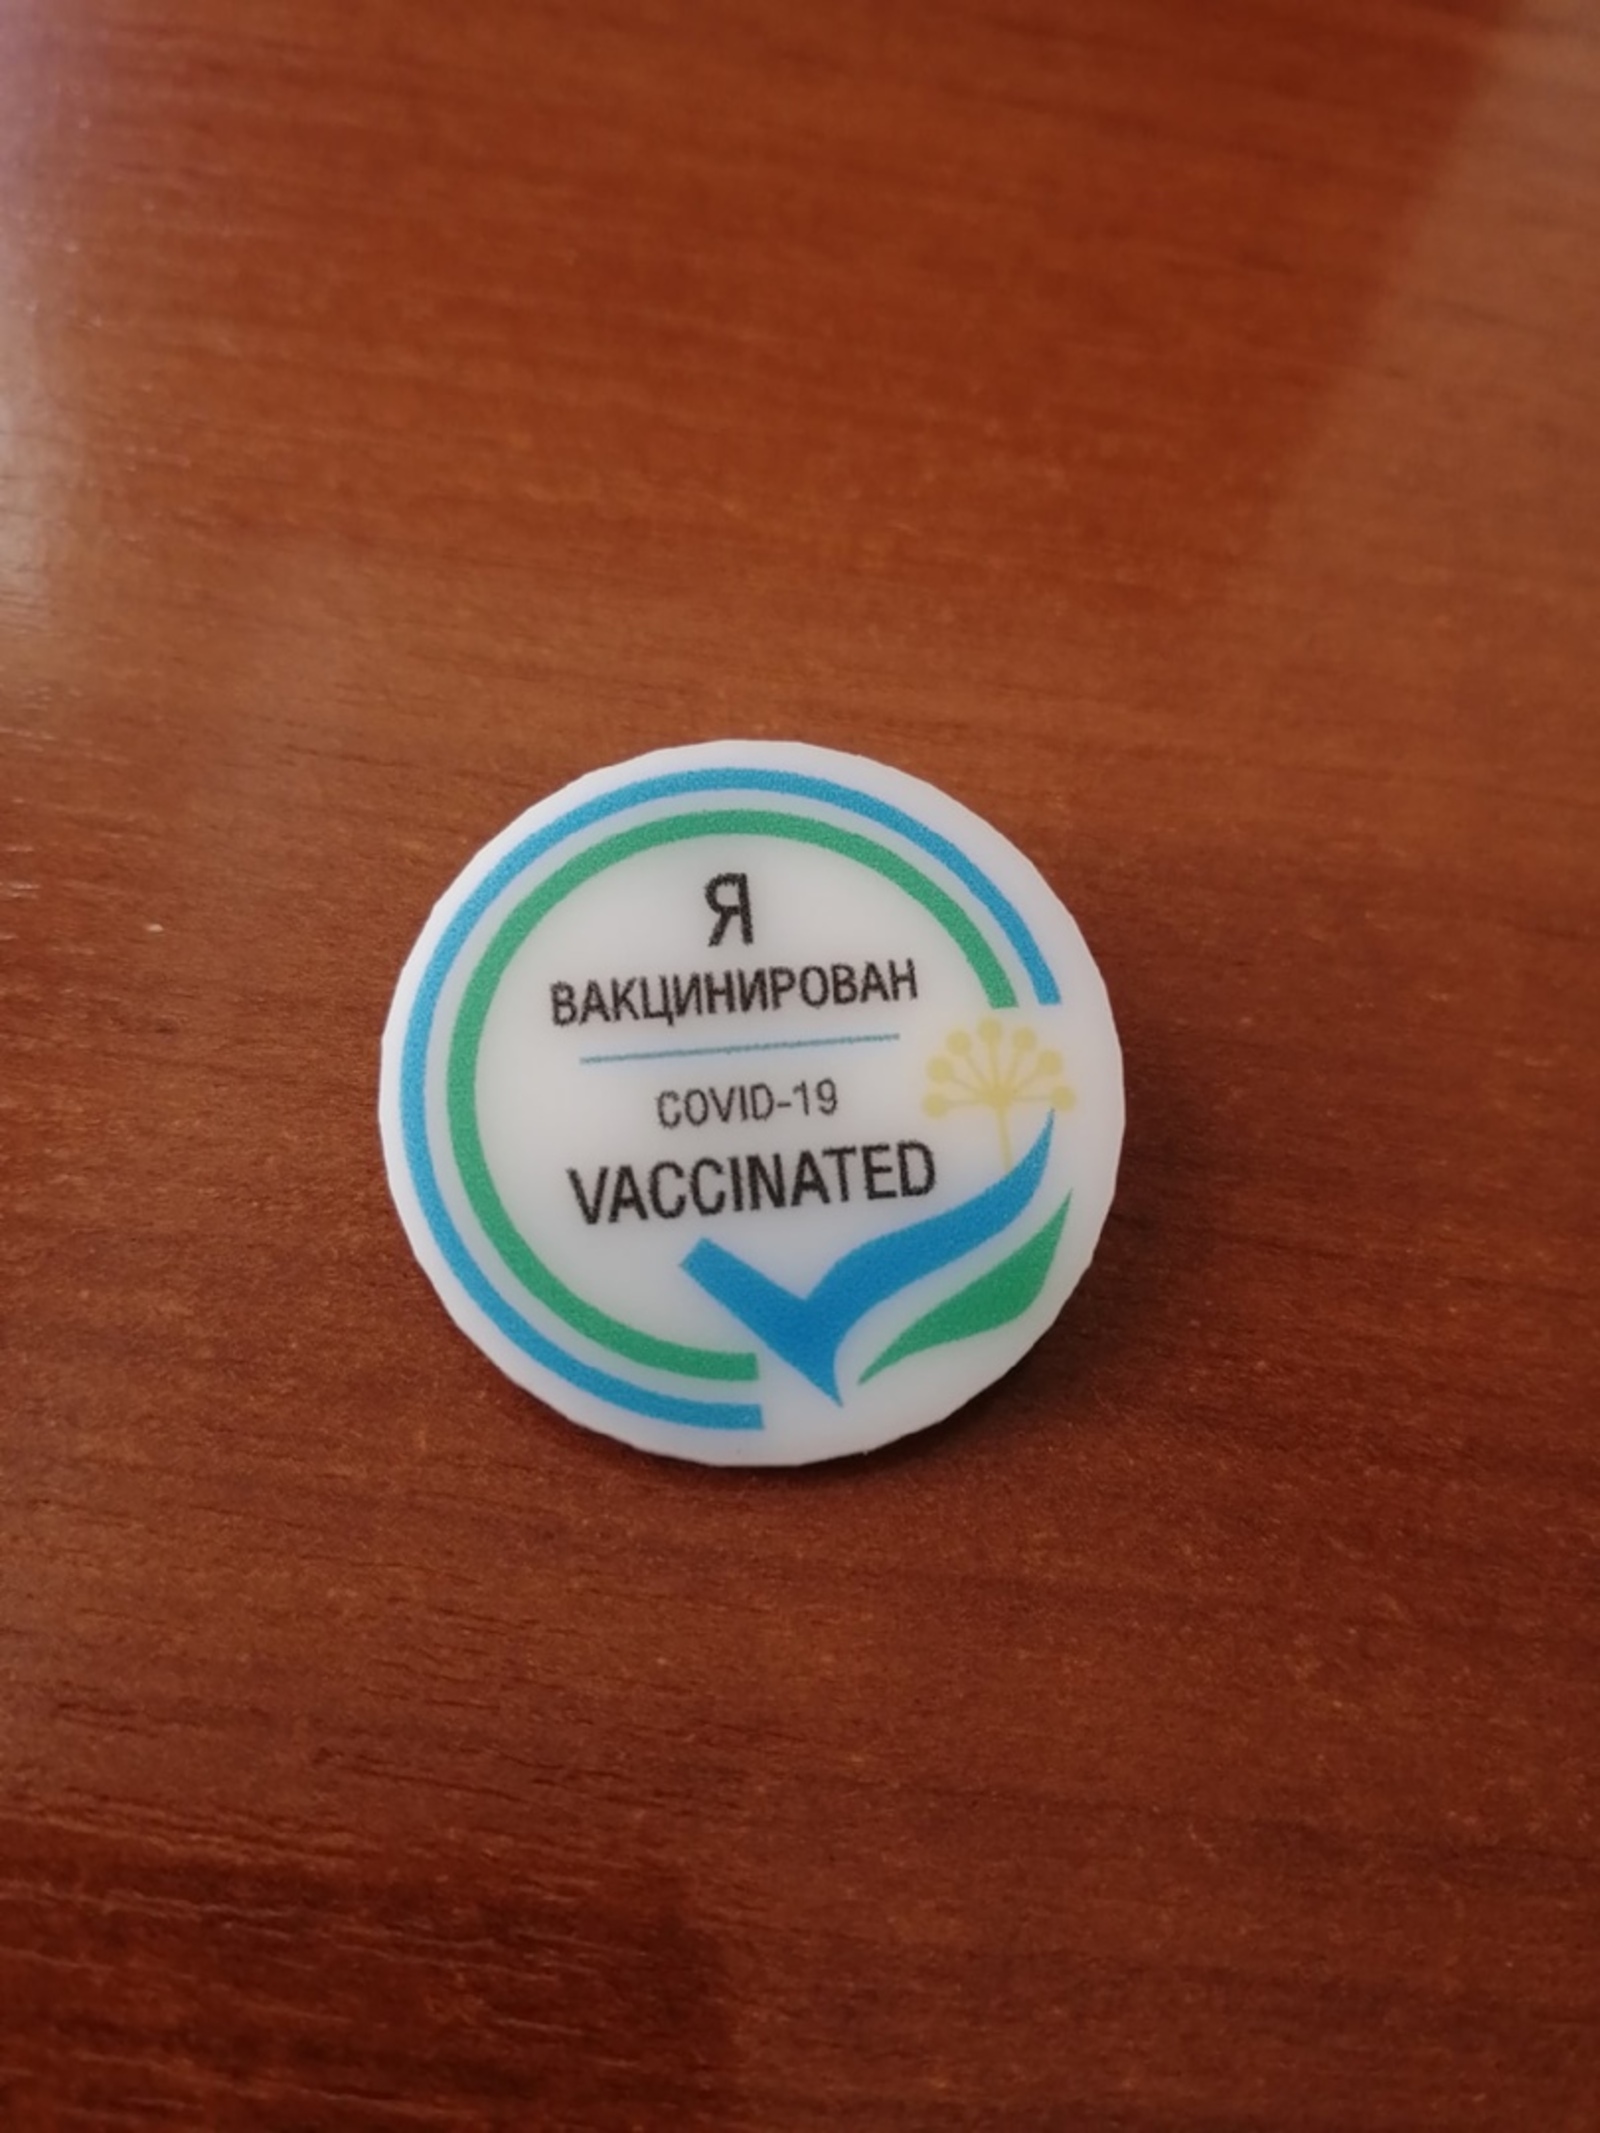 Жители Башкирии делятся мнением о вакцинации